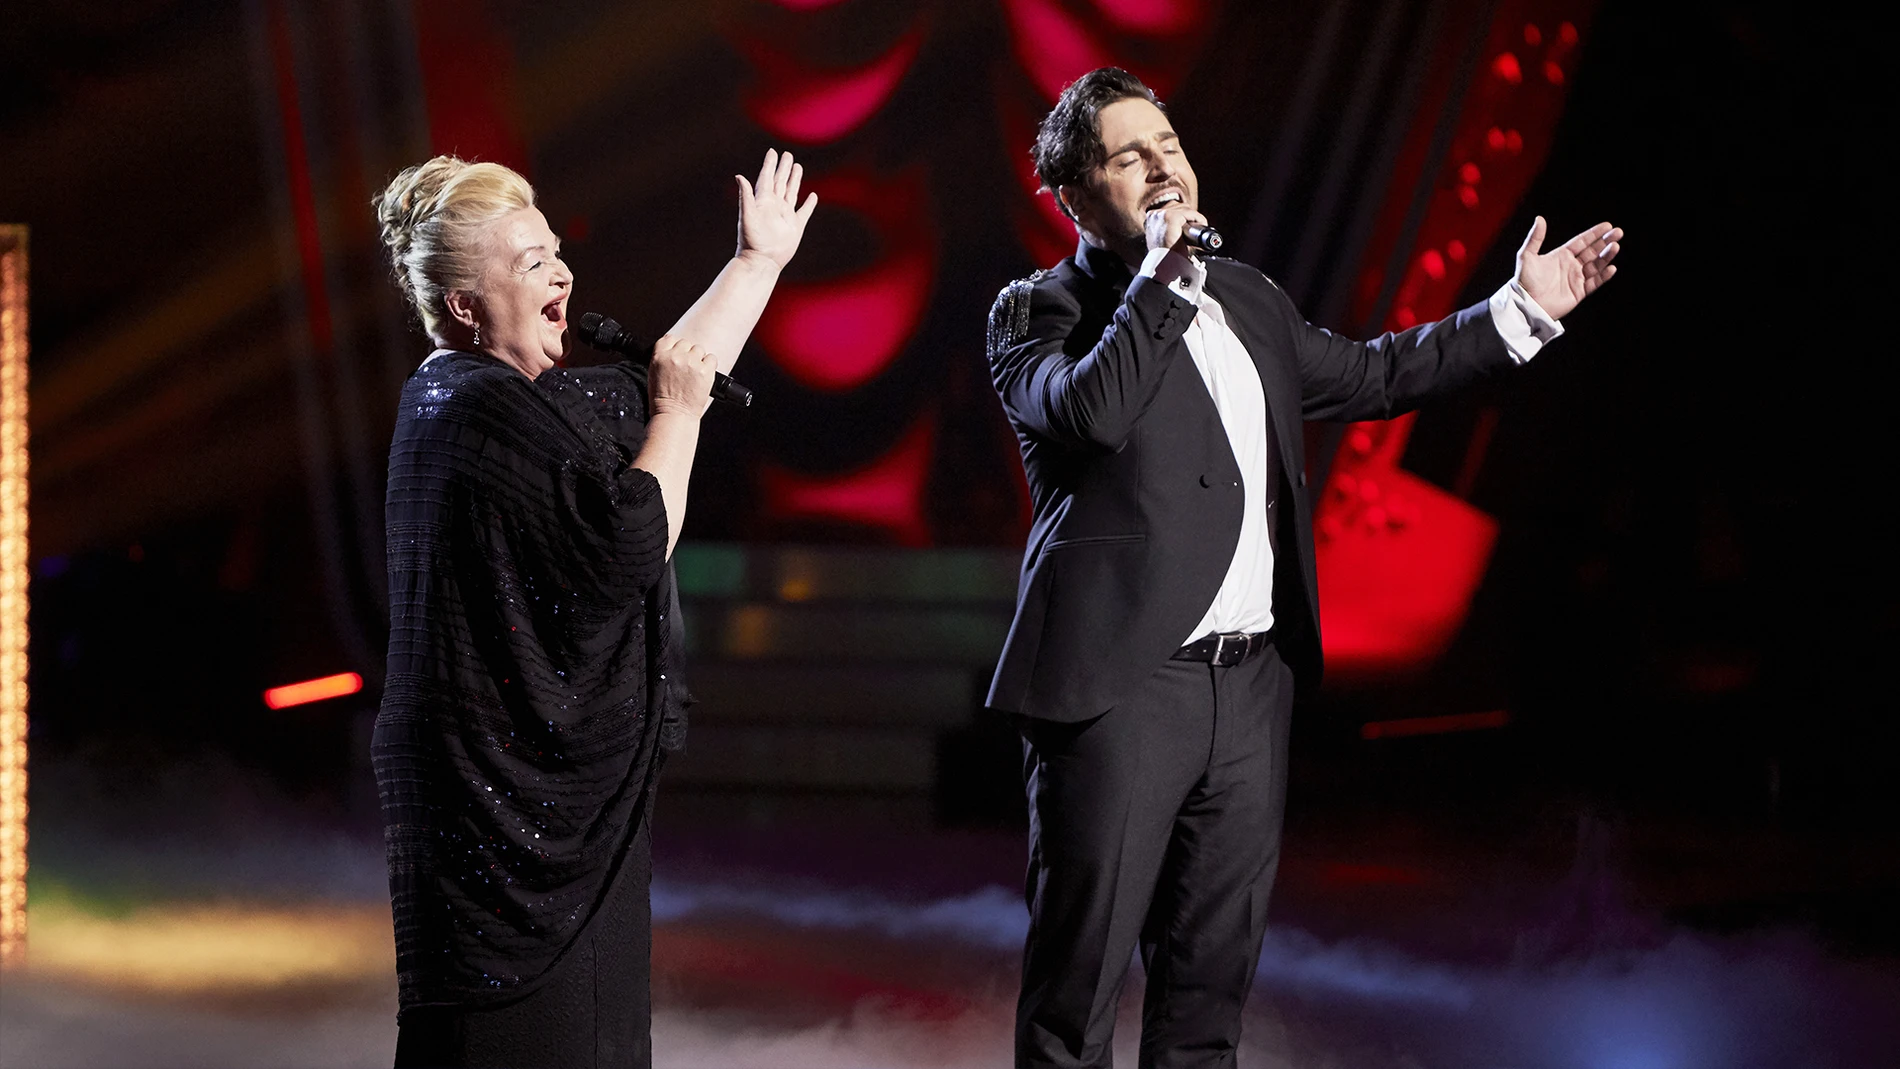 David Bustamante y Naida Abanovich cantan ‘La traviata’ en la Gran Final de ‘La Voz Senior’